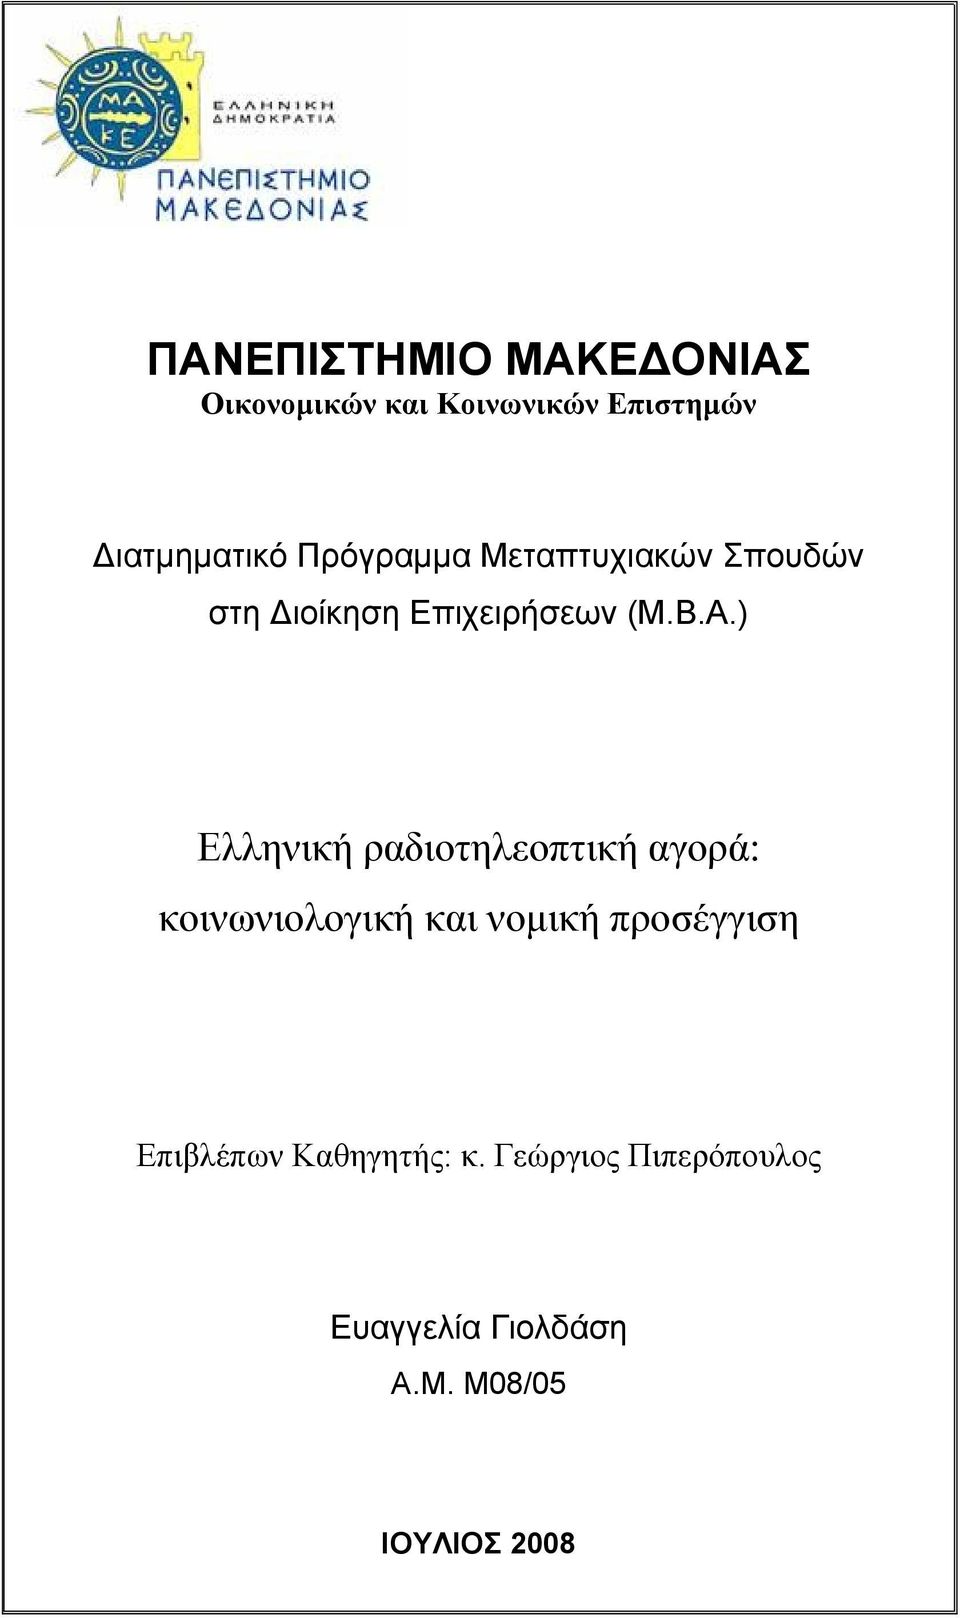 ) Ελληνική ραδιοτηλεοπτική αγορά: κοινωνιολογική και νομική προσέγγιση